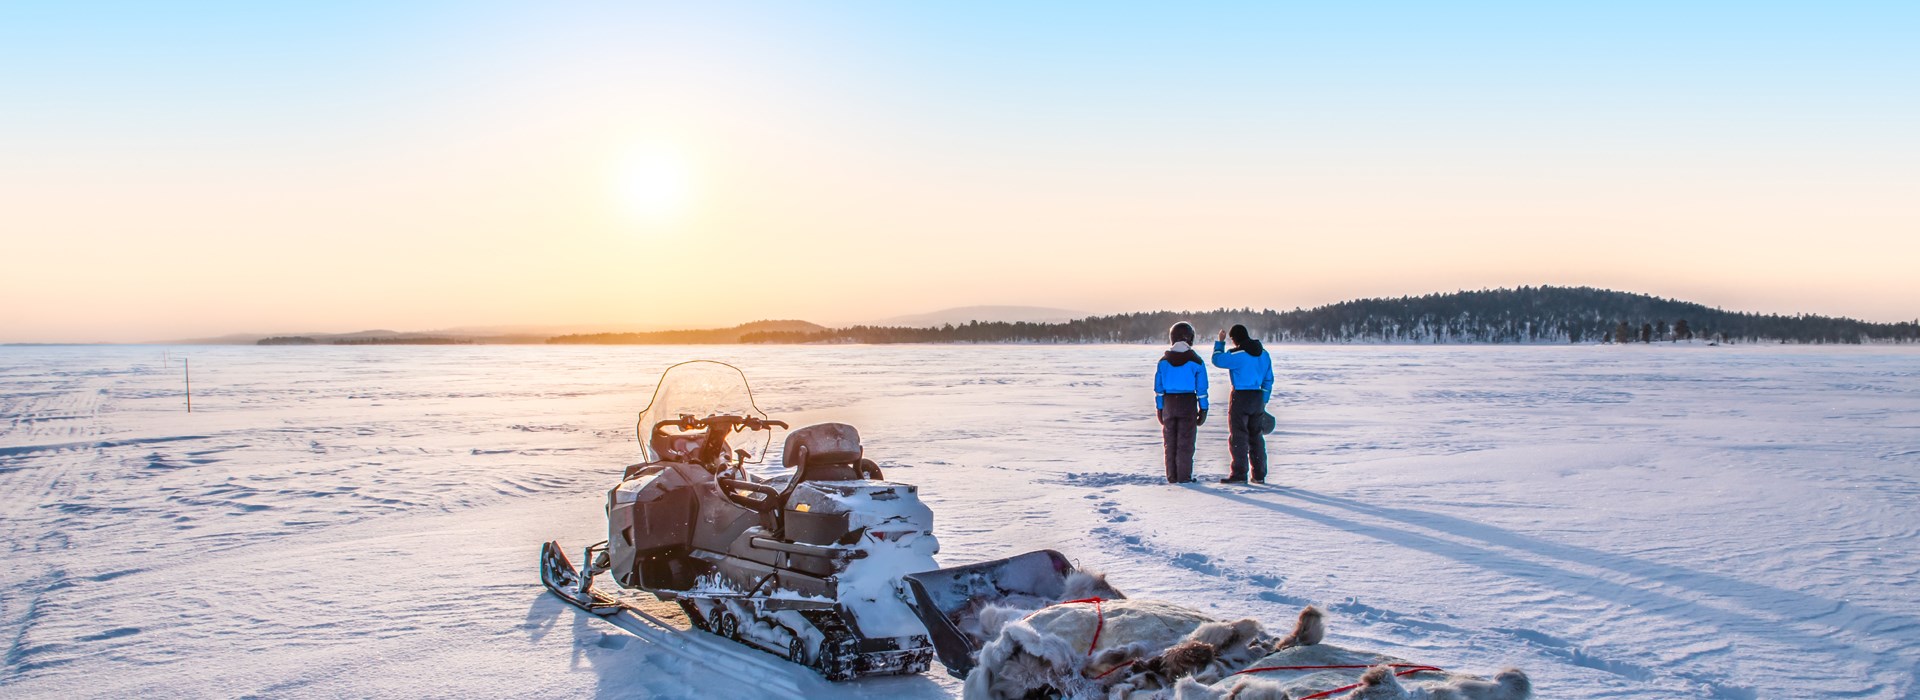 Visiter La Laponie en motoneige - Laponie